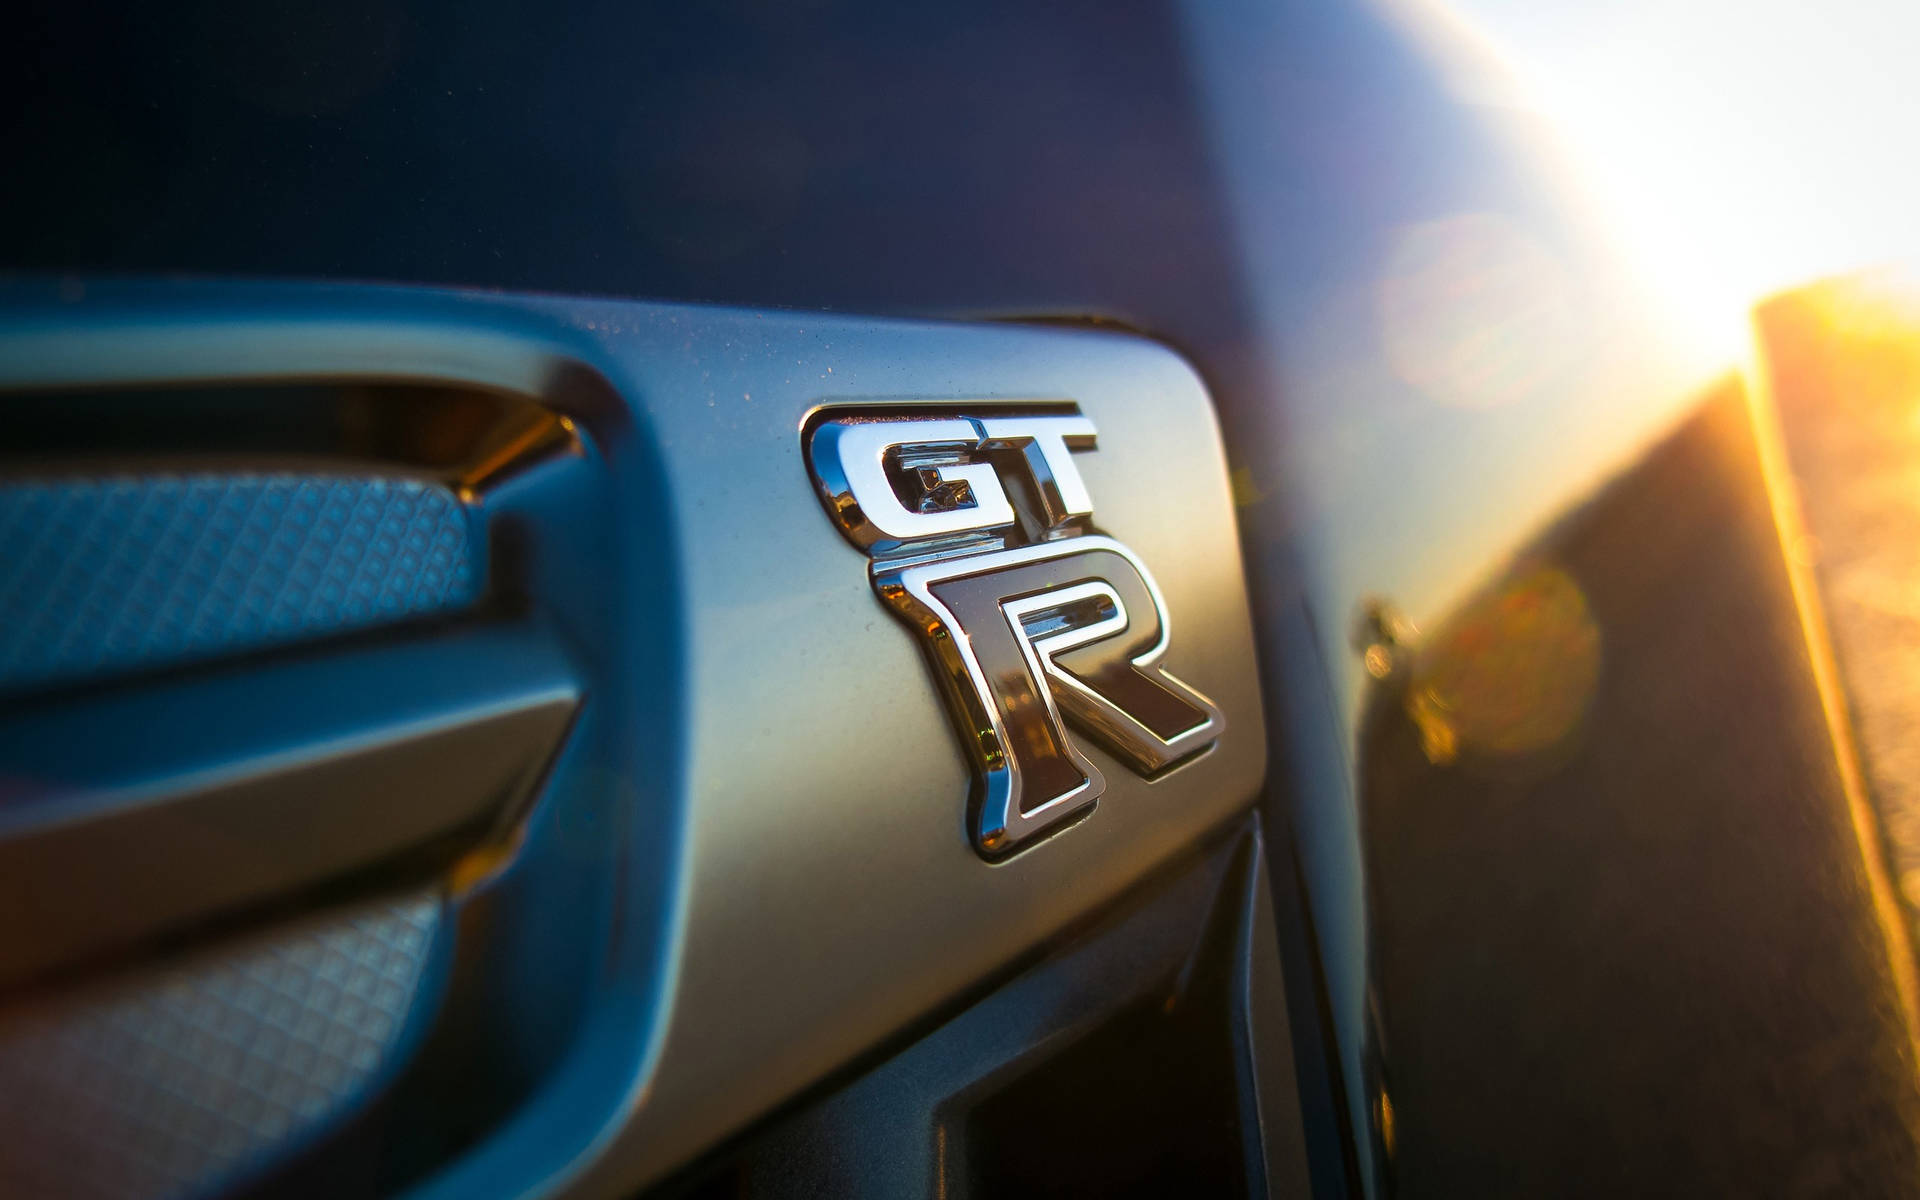 Nissan Skyline GTR R35 Zoomed-In Logo Wallpaper